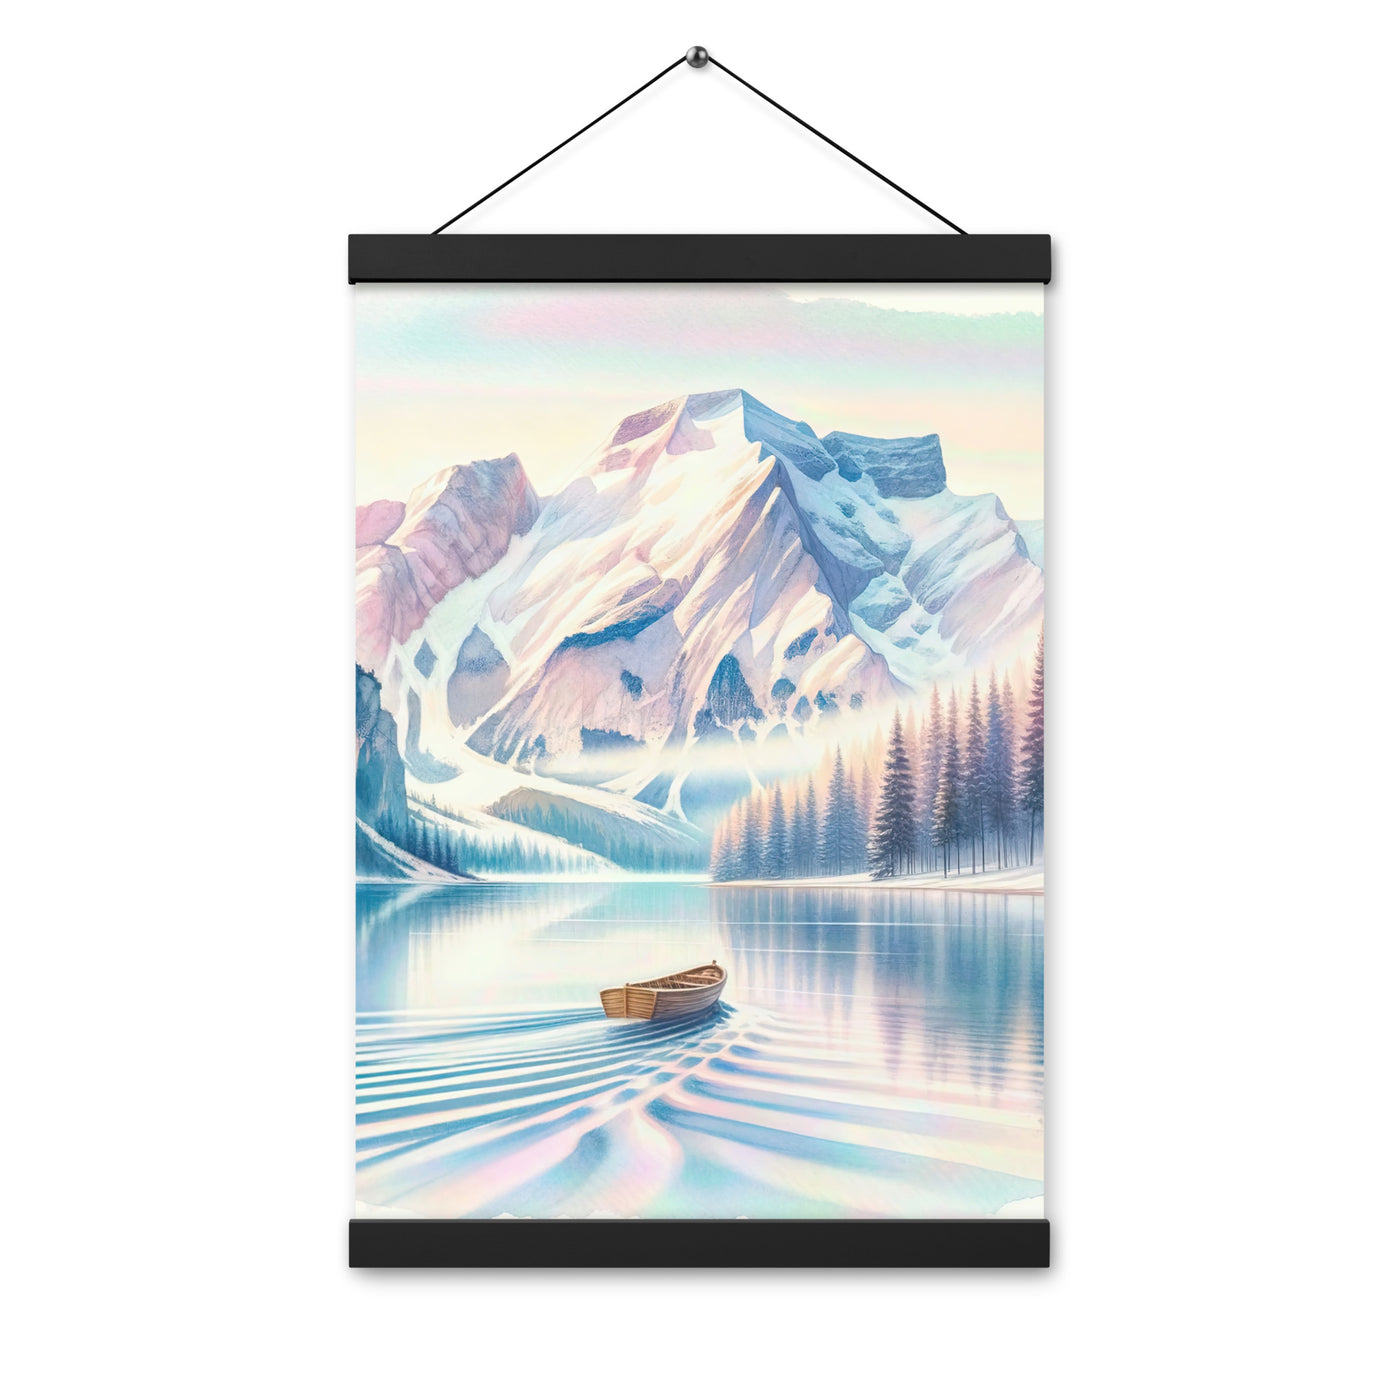 Aquarell eines klaren Alpenmorgens, Boot auf Bergsee in Pastelltönen - Premium Poster mit Aufhängung berge xxx yyy zzz 30.5 x 45.7 cm